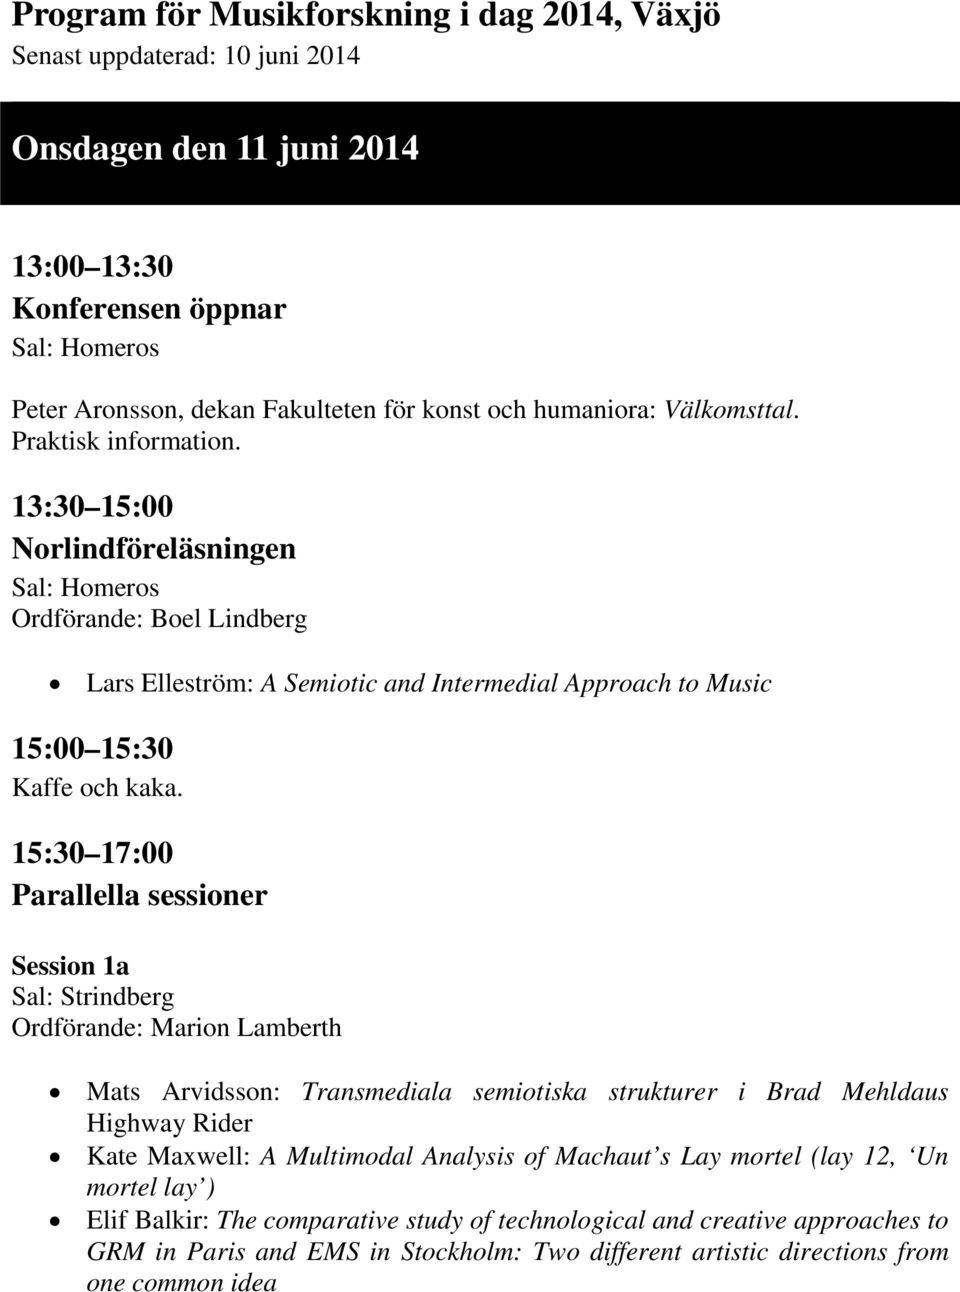 13:30 15:00 Norlindföreläsningen Ordförande: Boel Lindberg Lars Elleström: A Semiotic and Intermedial Approach to Music 15:00 15:30 Kaffe och kaka.